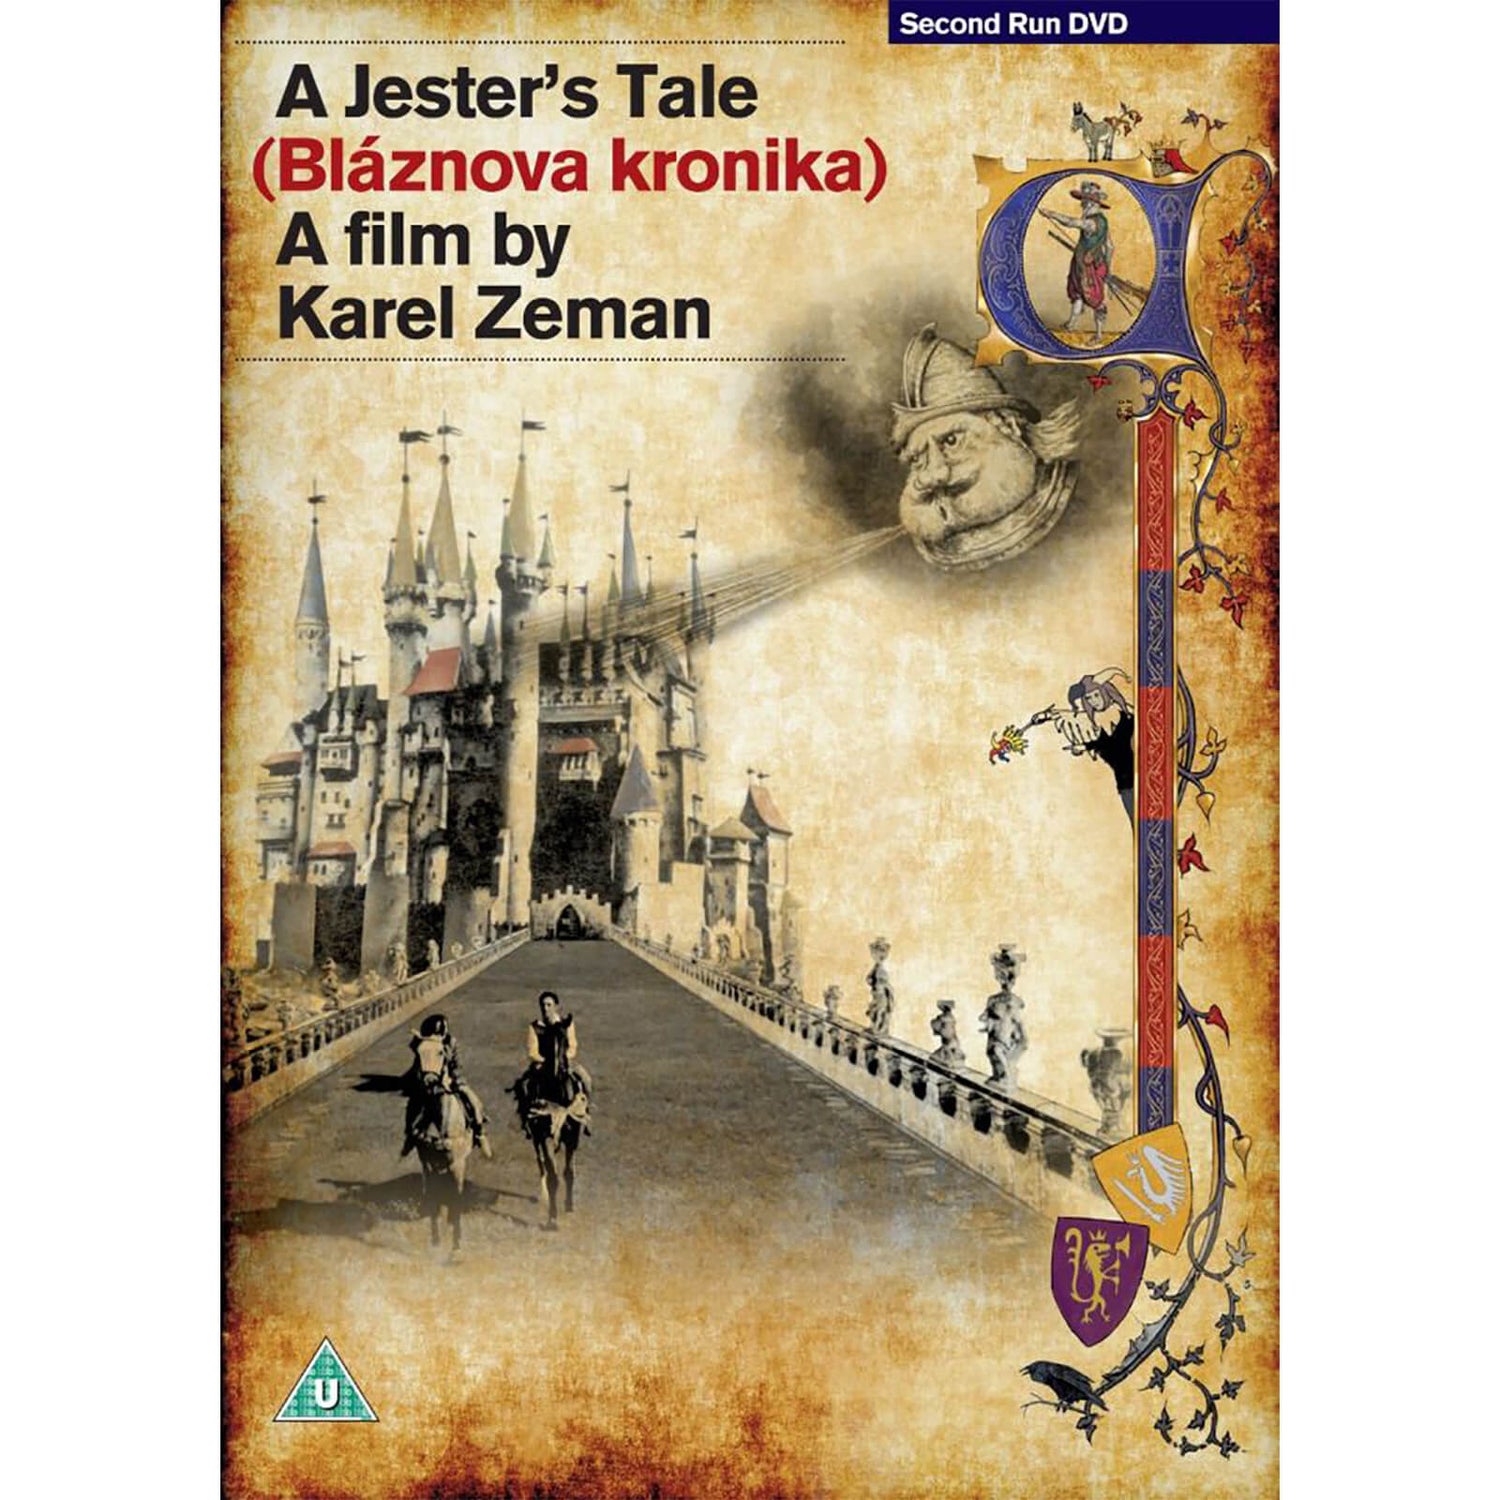 A Jester's Tale DVD